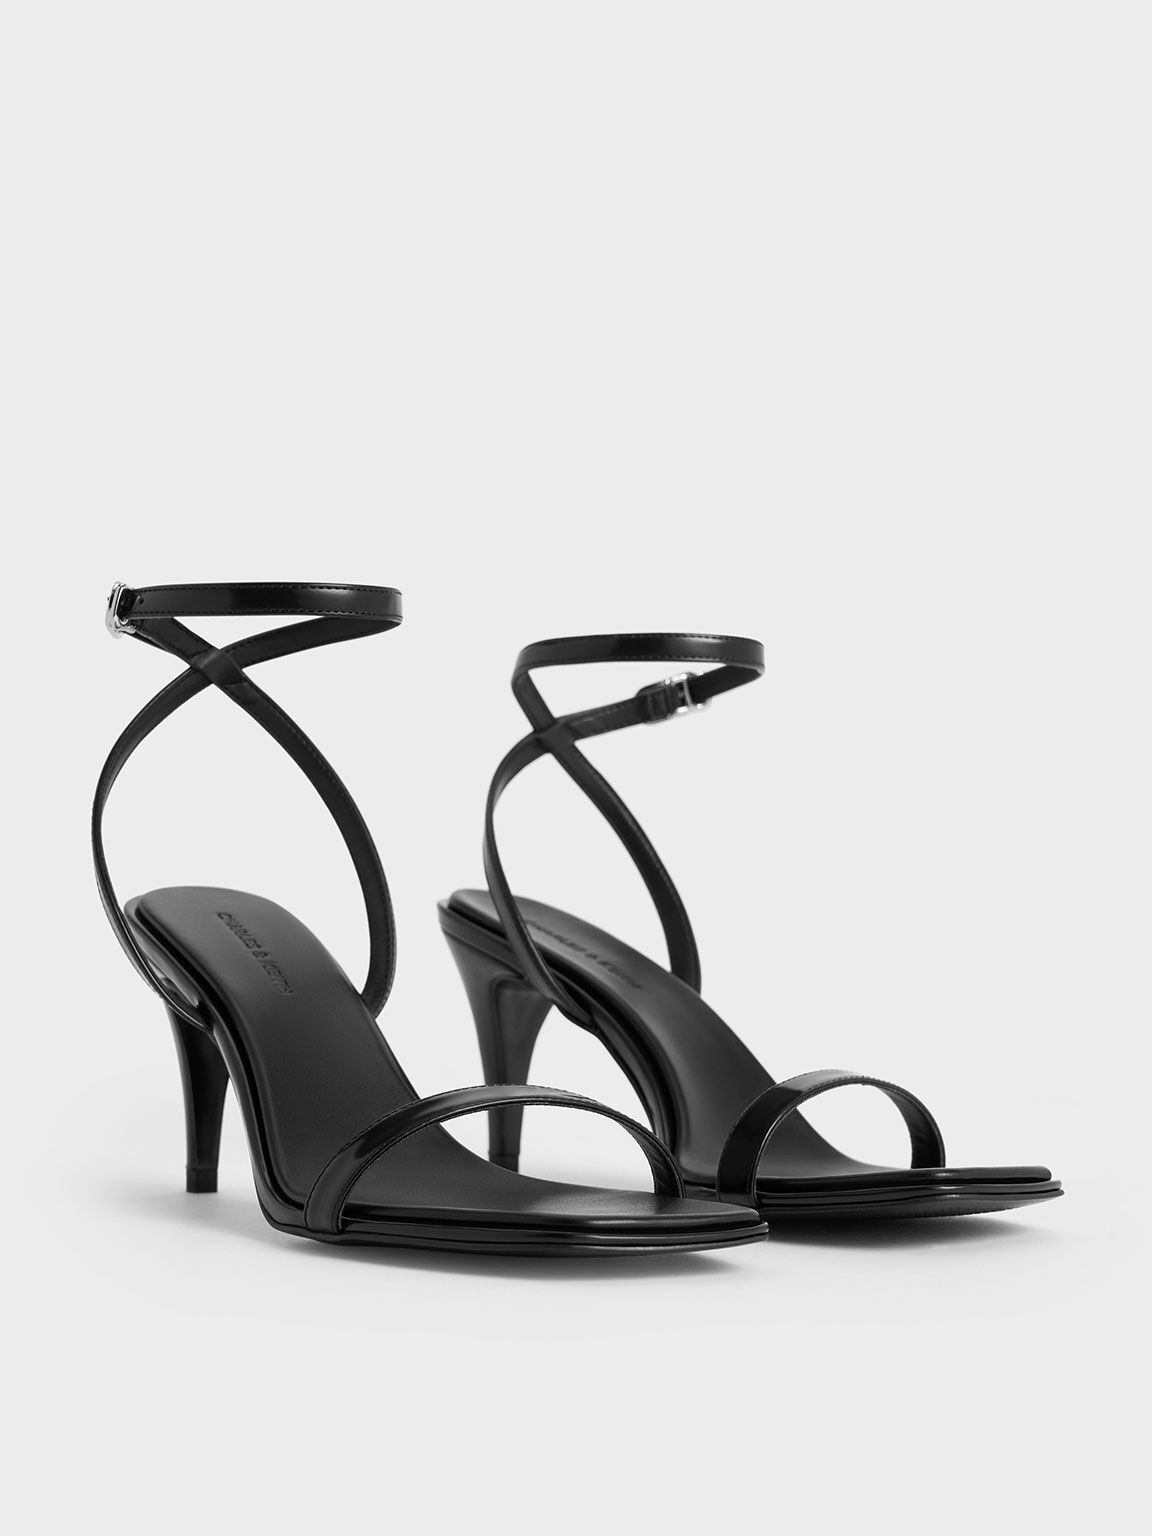 Sandal Heeled Ankle-Strap, Black Box, hi-res